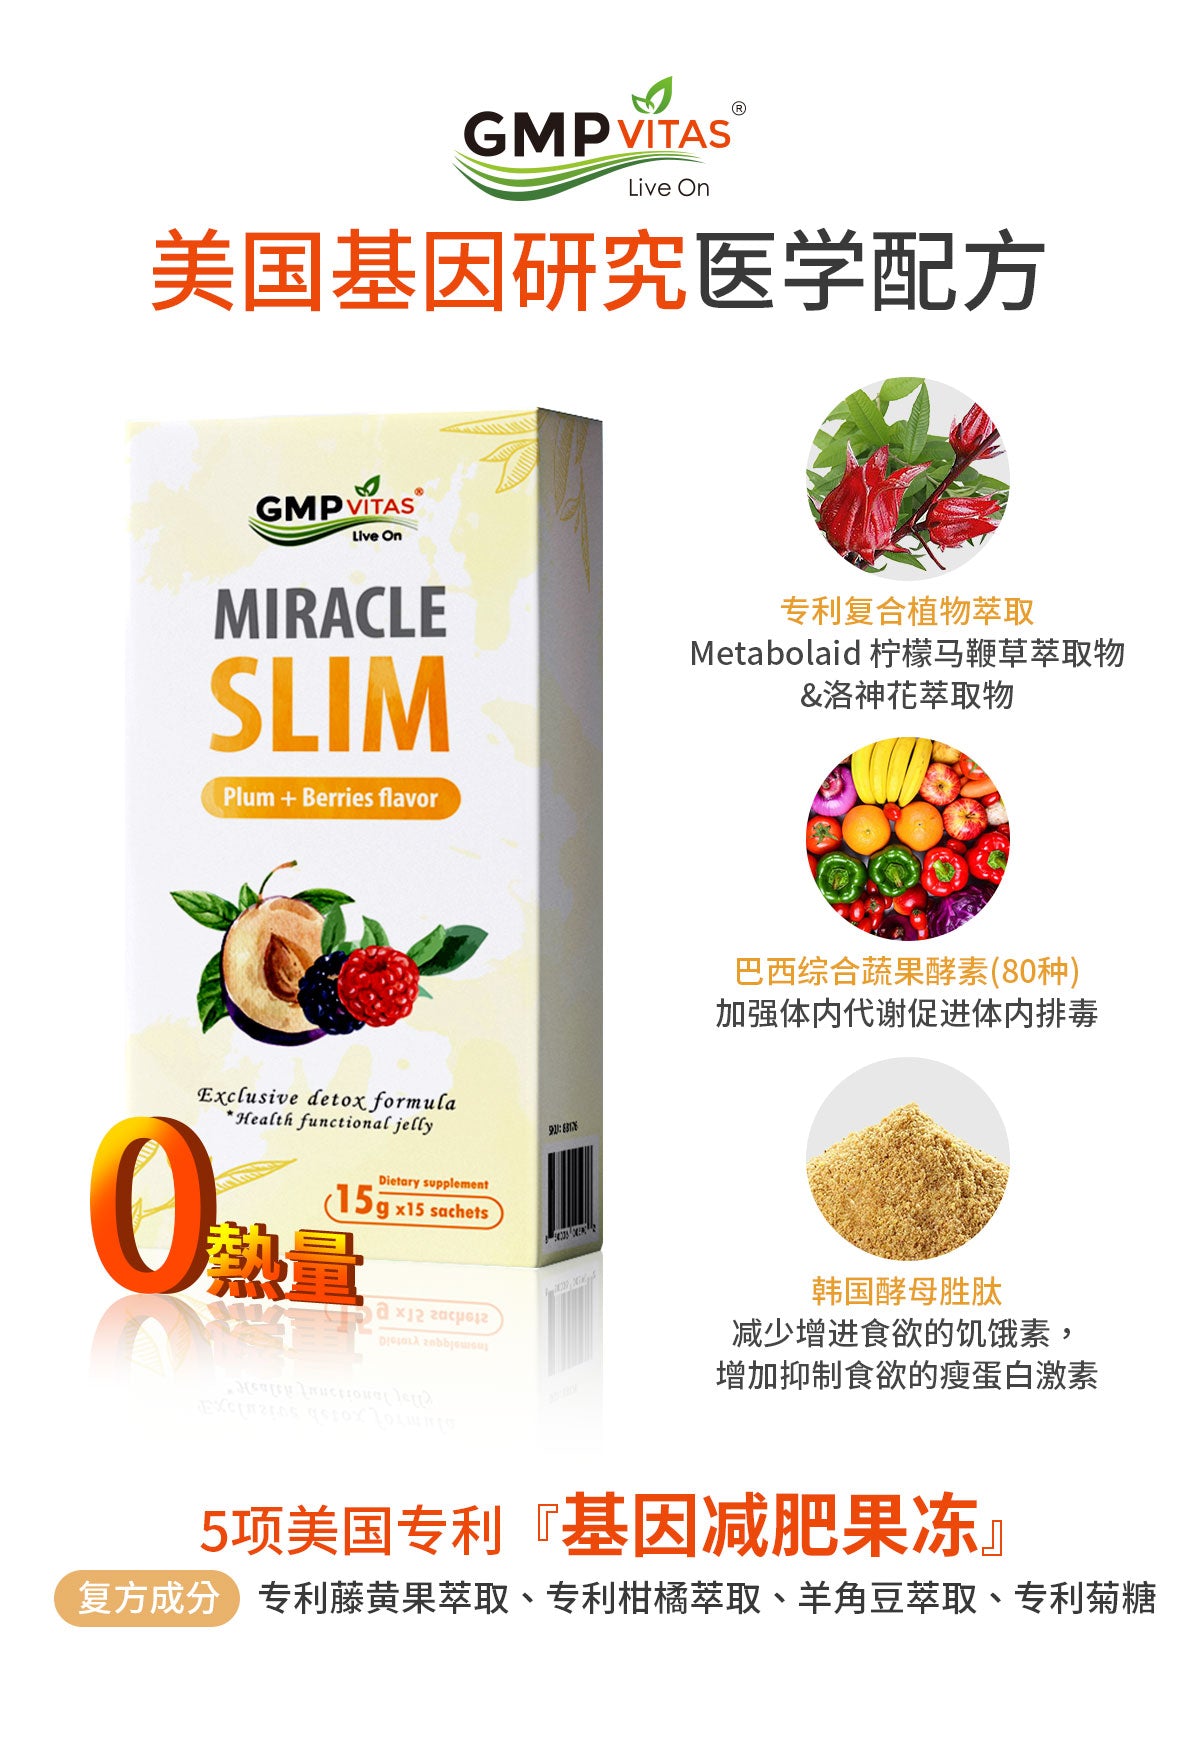 美国纯植物天然排毒抑制食欲瘦身减肥果冻 健康美味  一天一包酸甜可口 GMP Vitas Miracle Slim 15g x 15包